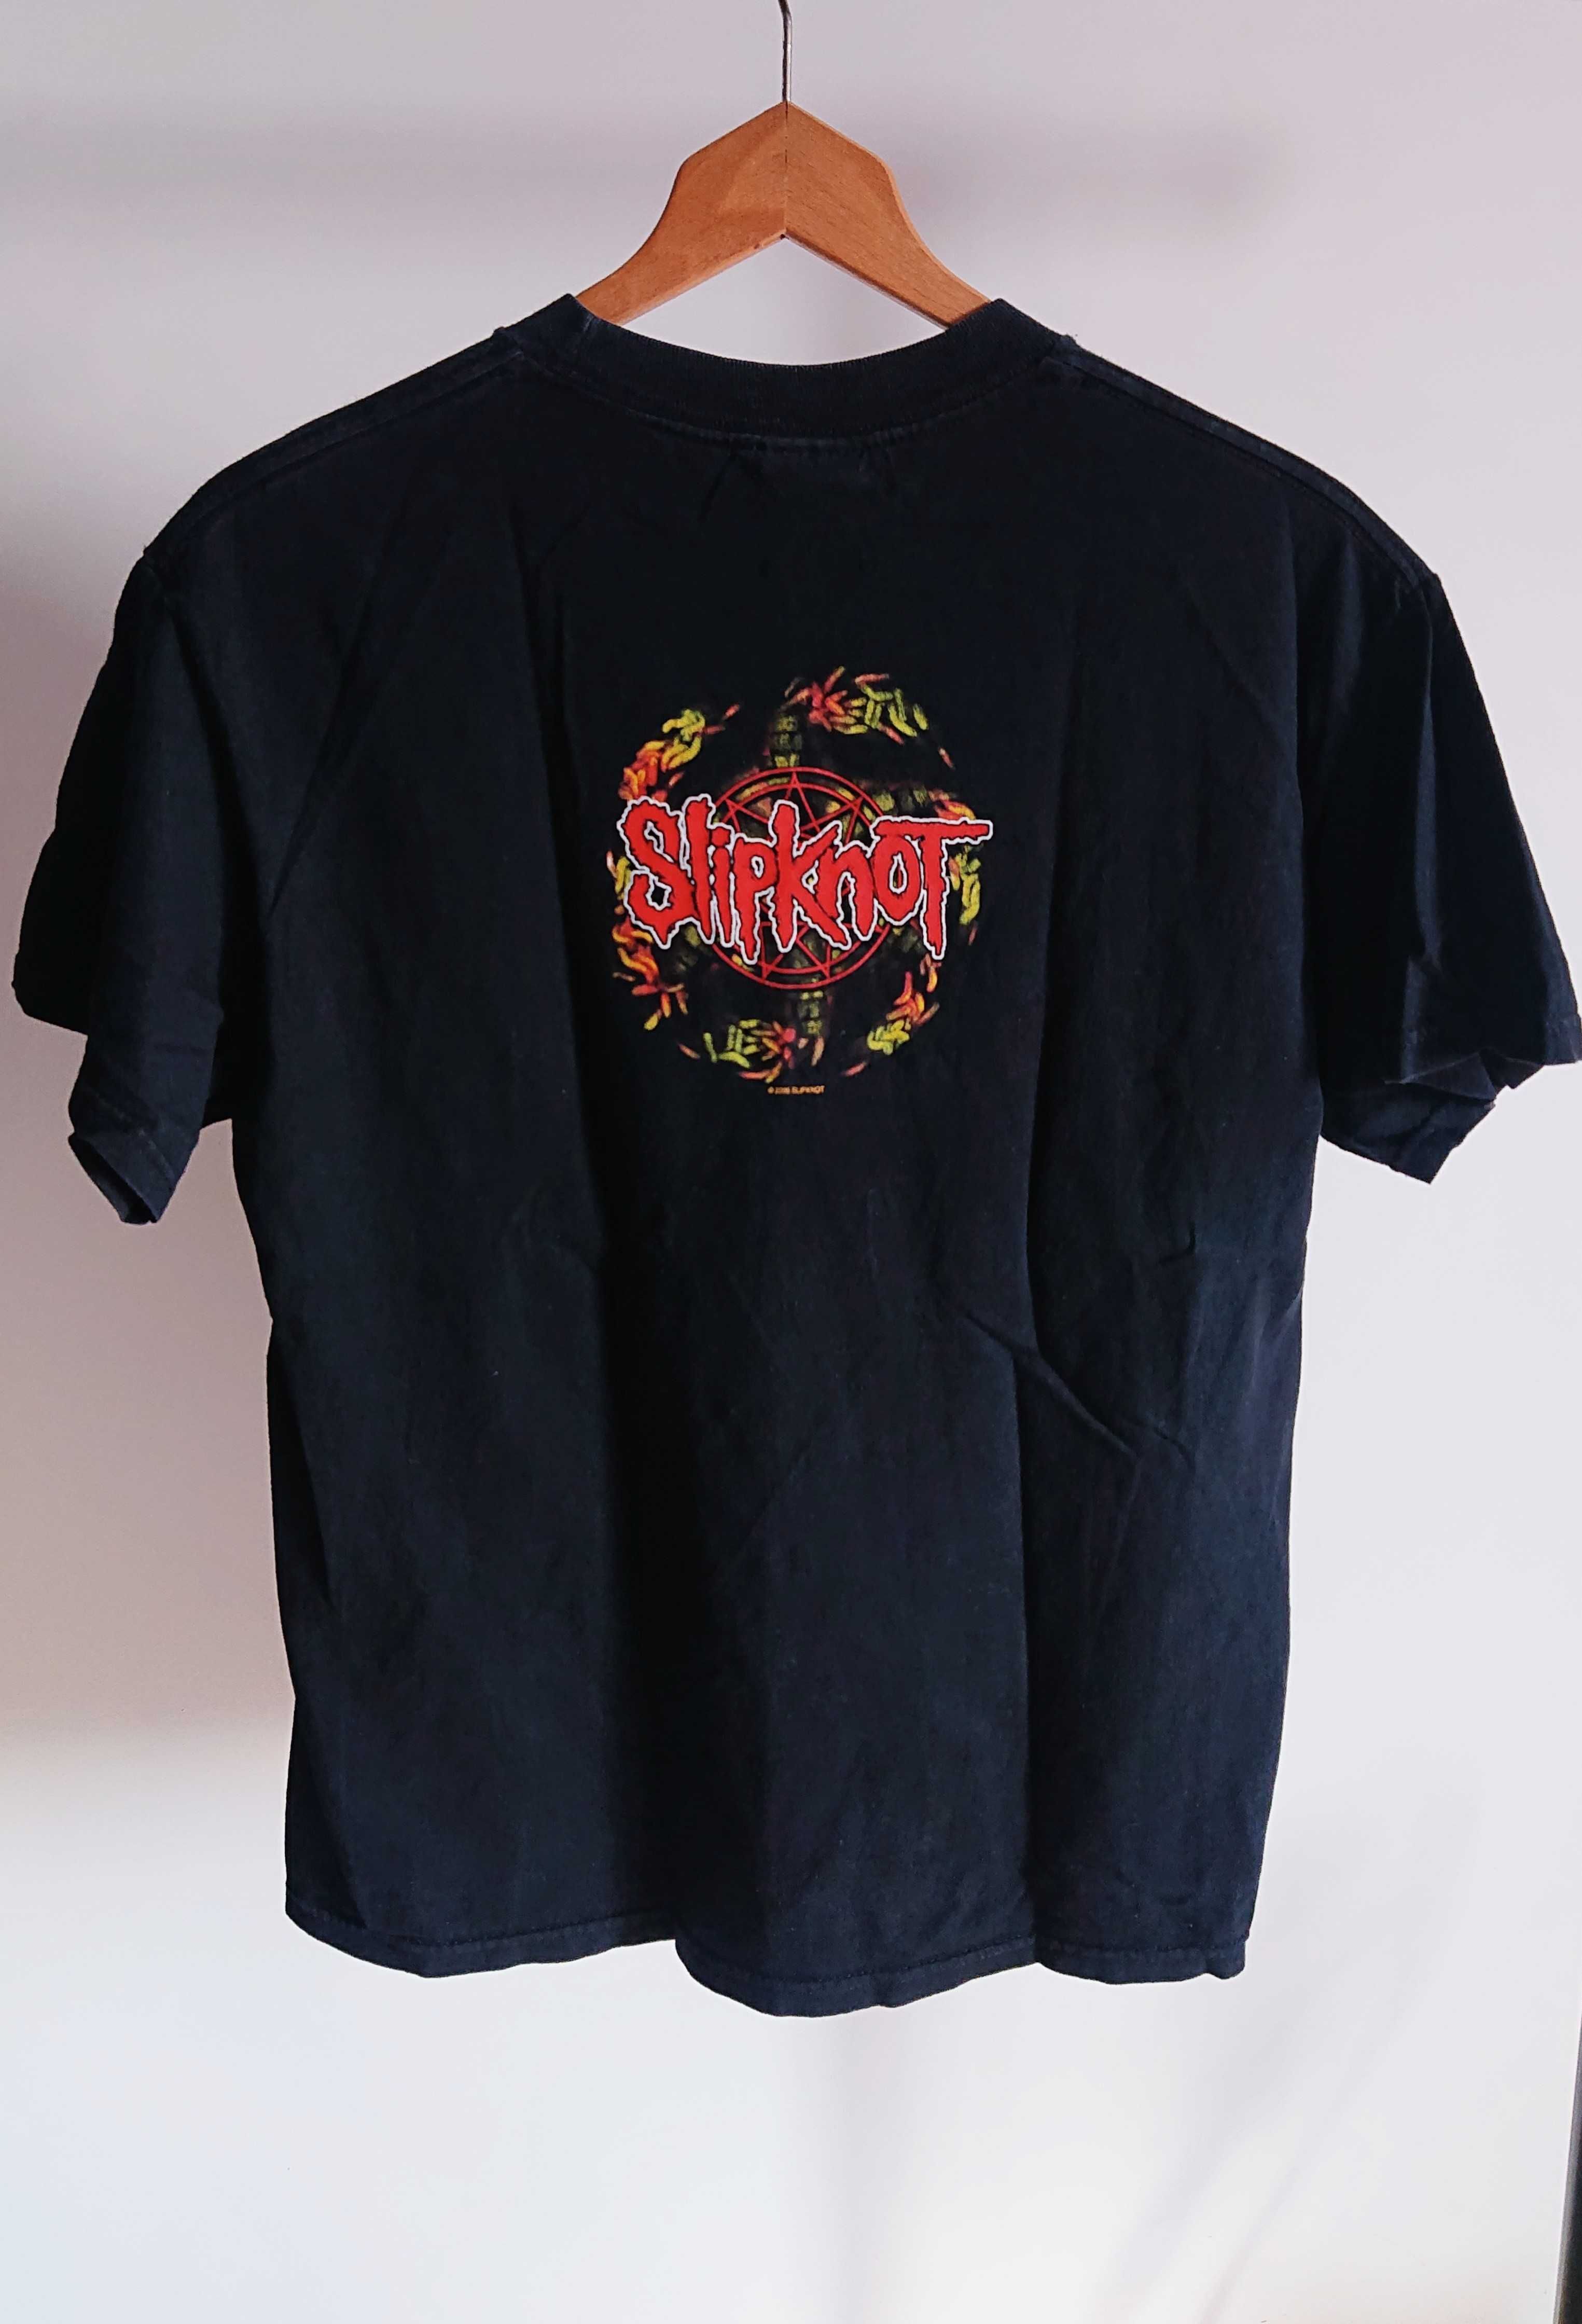 Slipknot The Subliminal Verses 2005 Vintage T-shirt